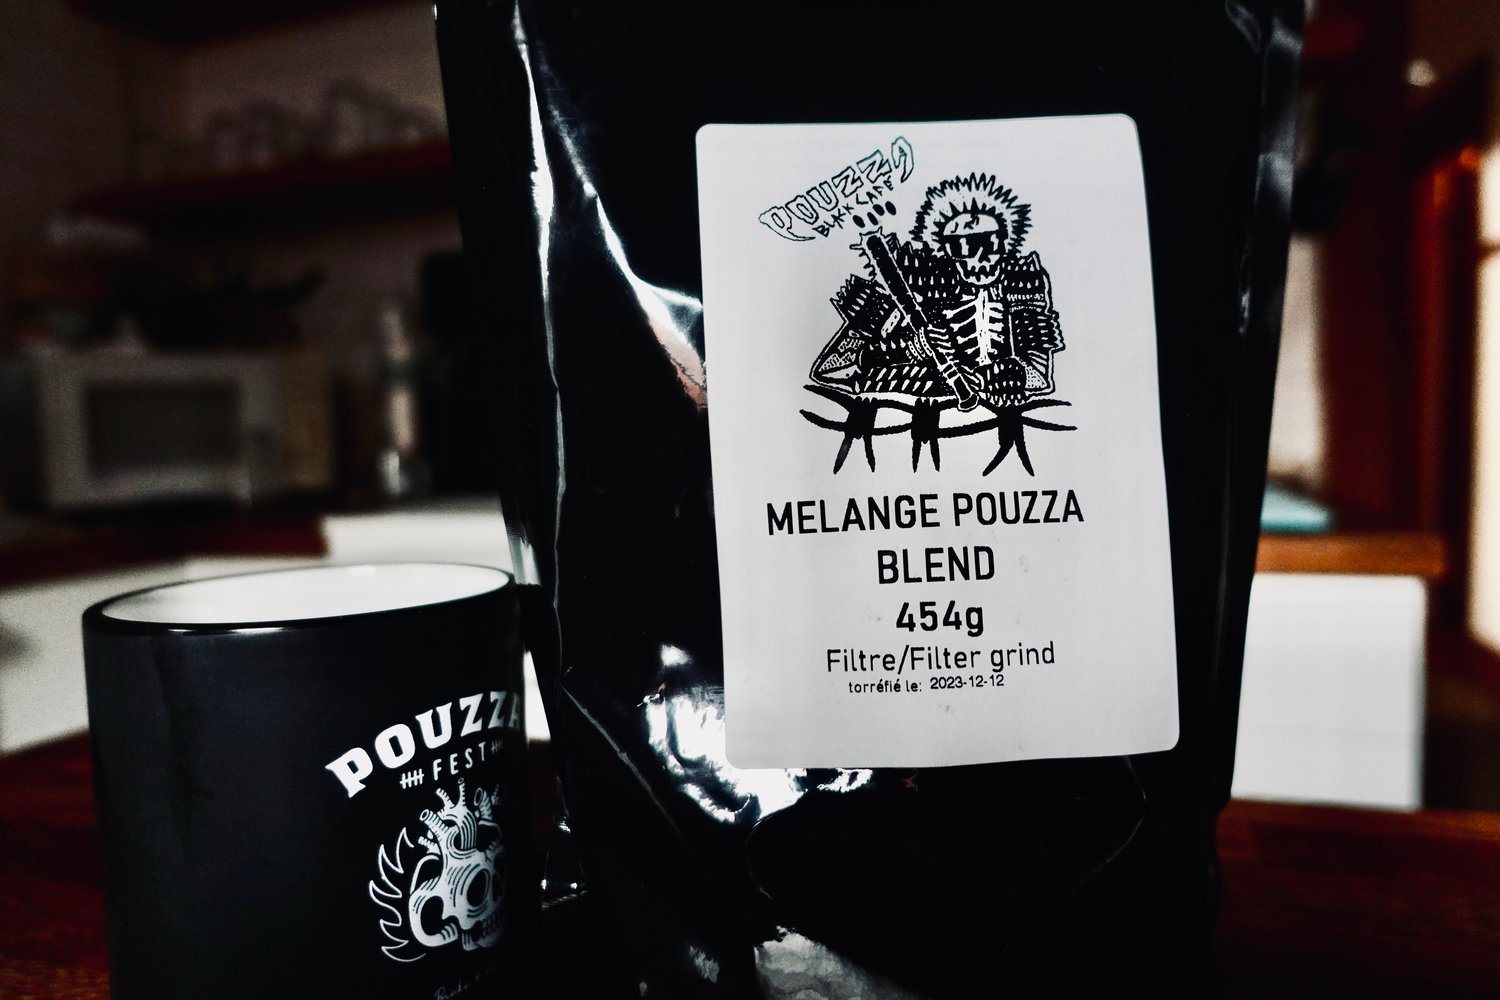 Image of  "Black Café" - Pouzza Blend - Sac de café / Coffee bag - 454G